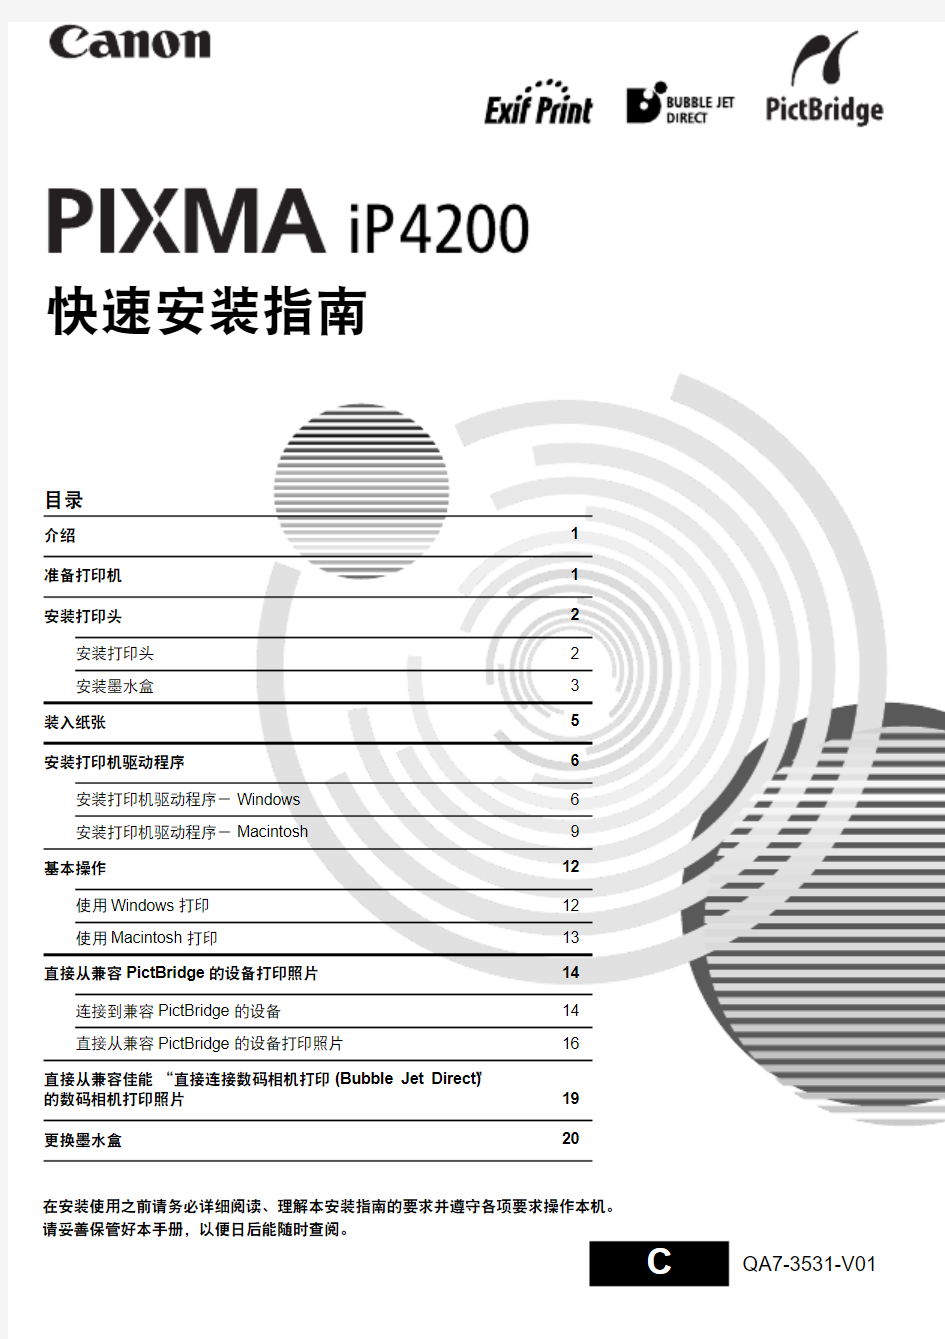 佳能ip4200打印机官方说明书中文版